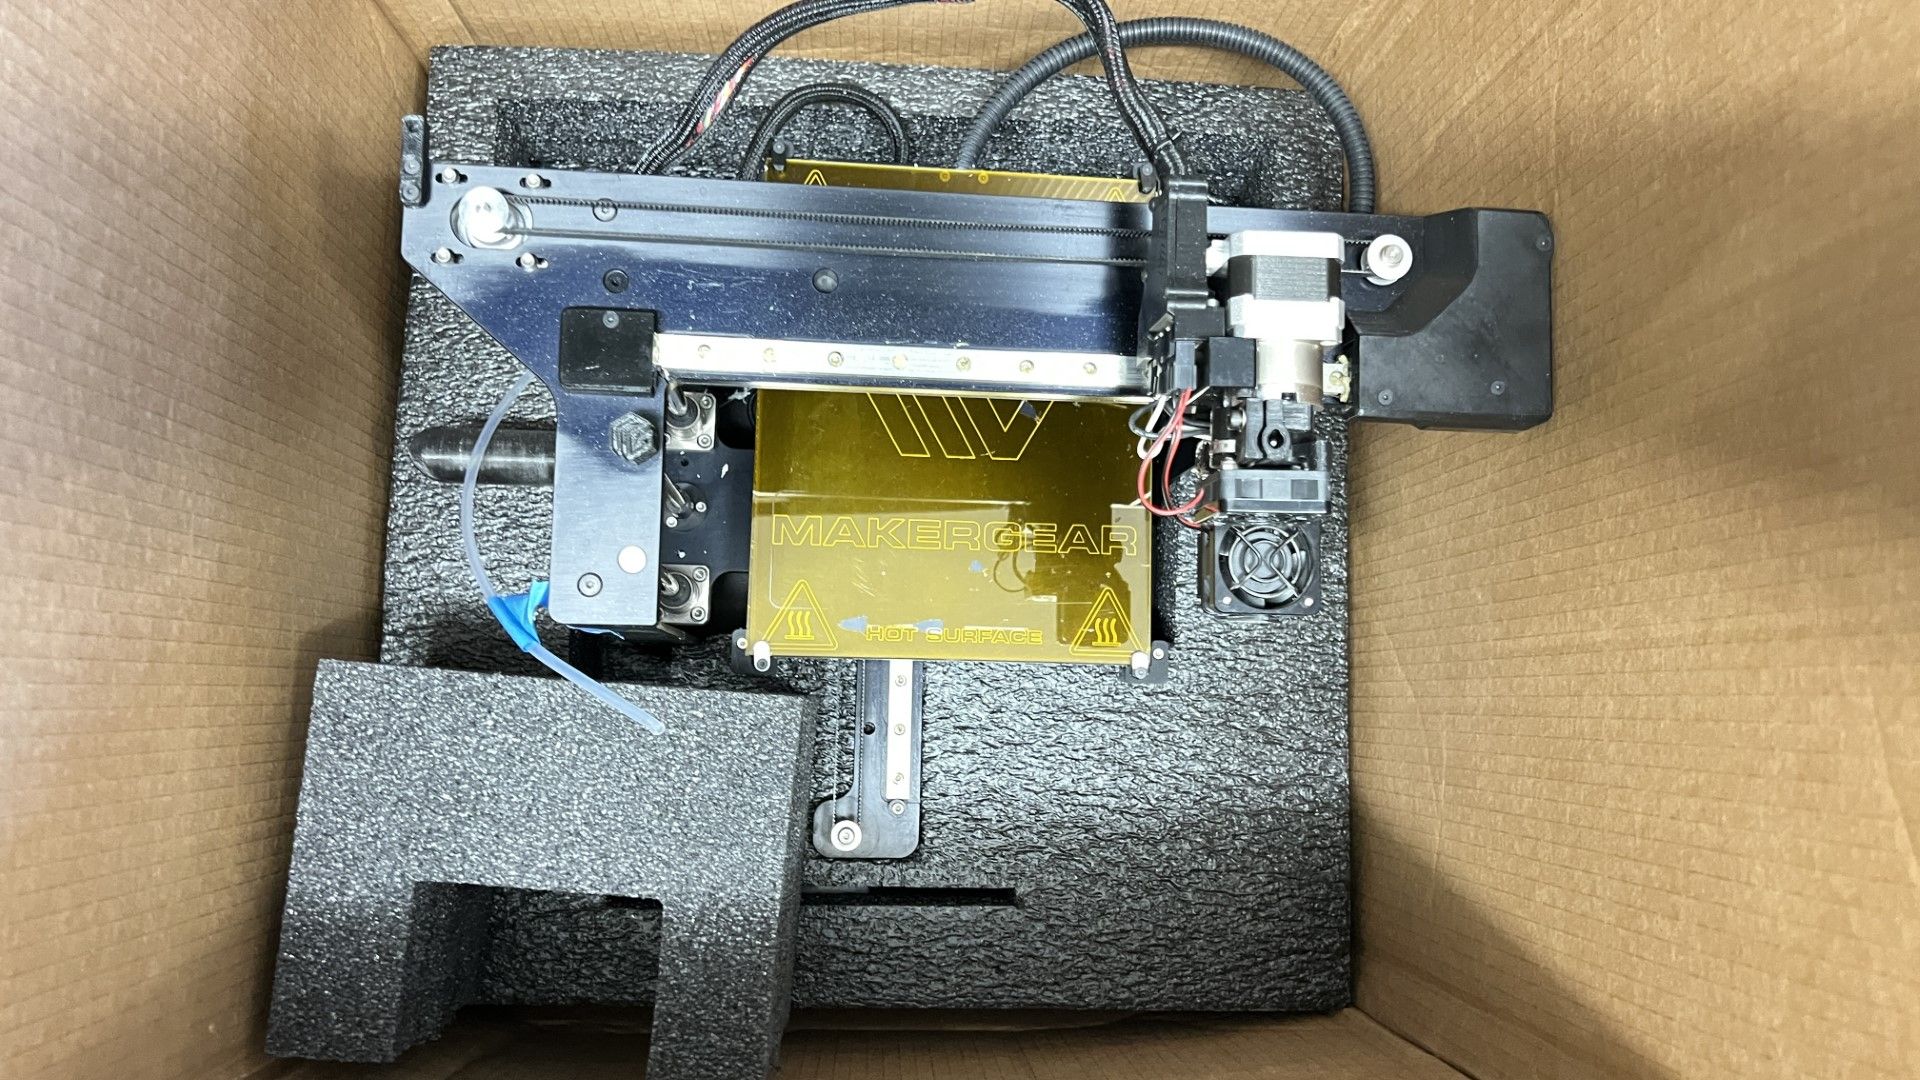 Prototype 3D Printer - Image 2 of 9